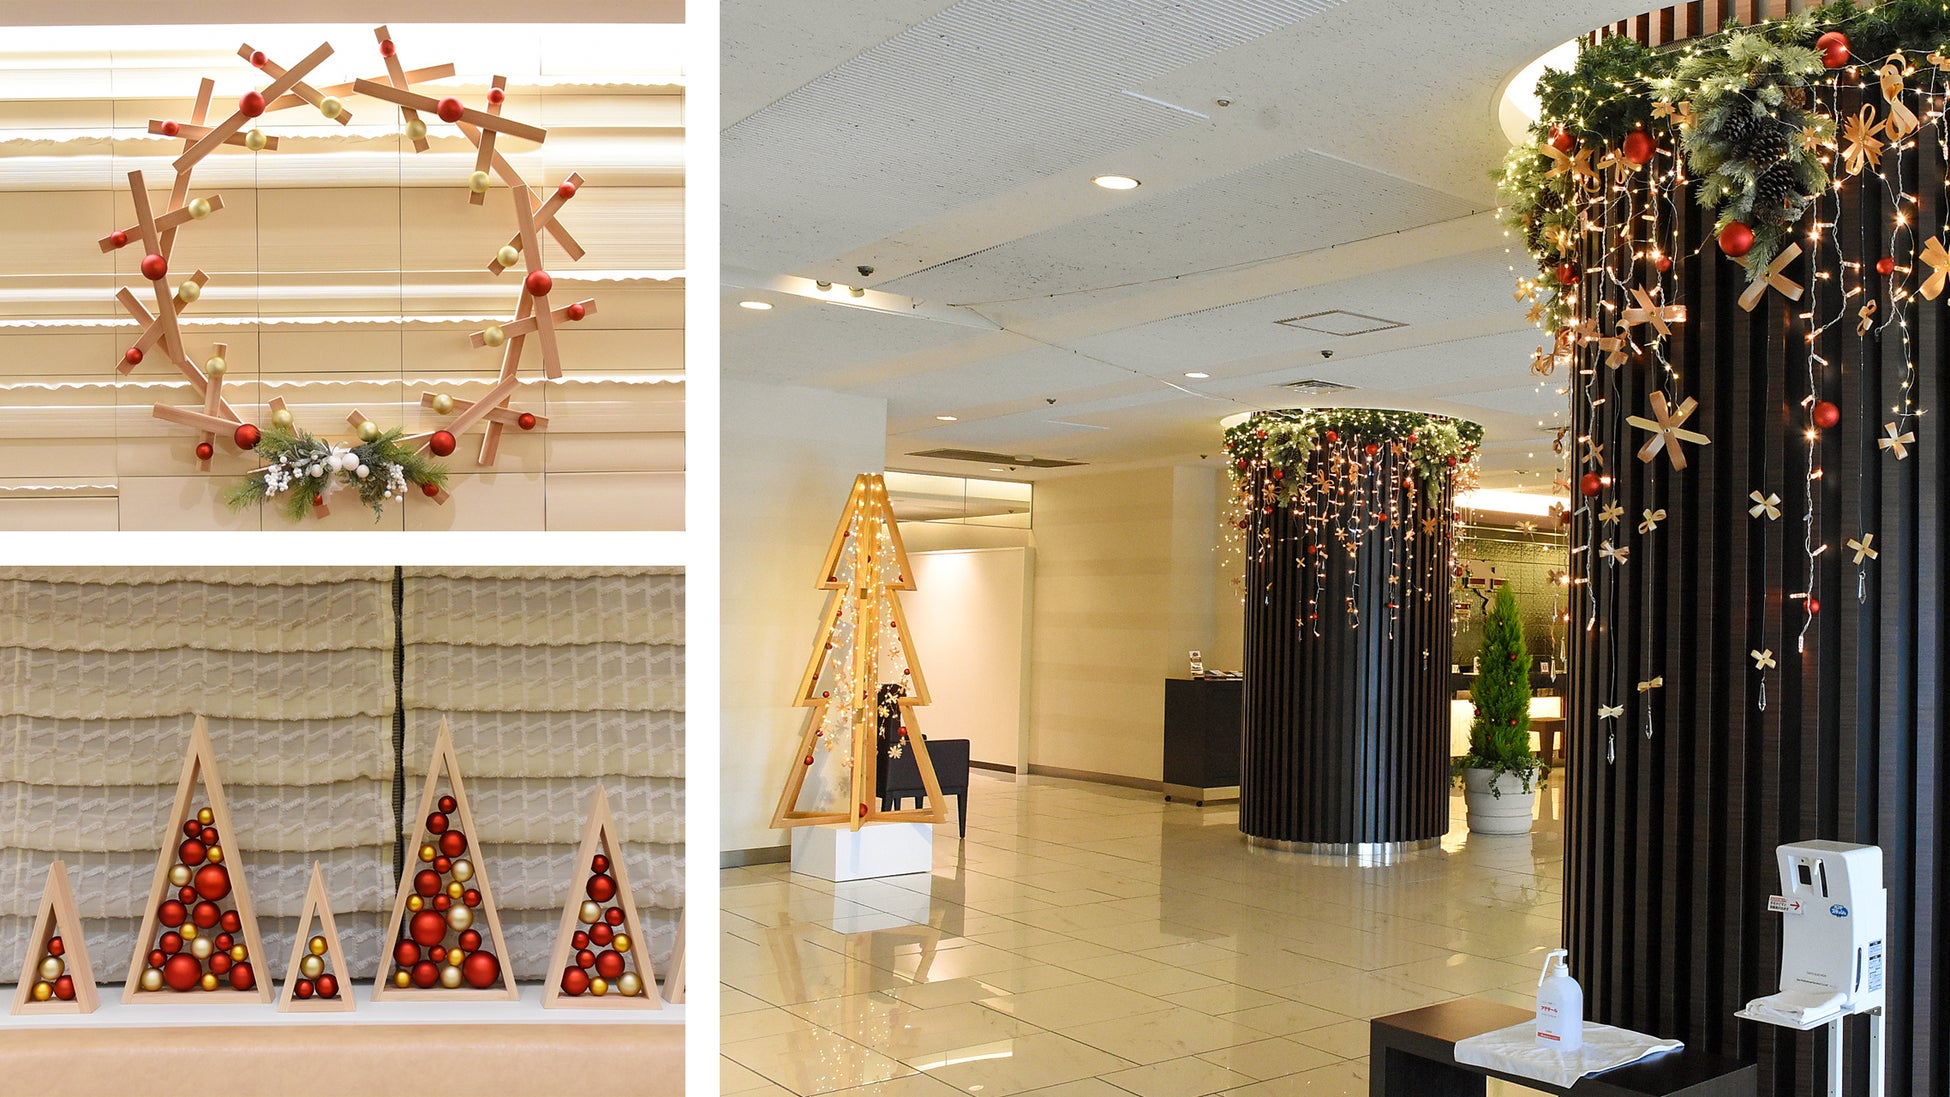 廃棄される秋田杉の端材を活用したクリスマス装飾がホテルロビーに登場のサブ画像1_秋田杉のオーナメントとシンボルツリーがロビーでお出迎え。リースやミニツリーも全て廃棄される秋田杉の端材を材料としている。